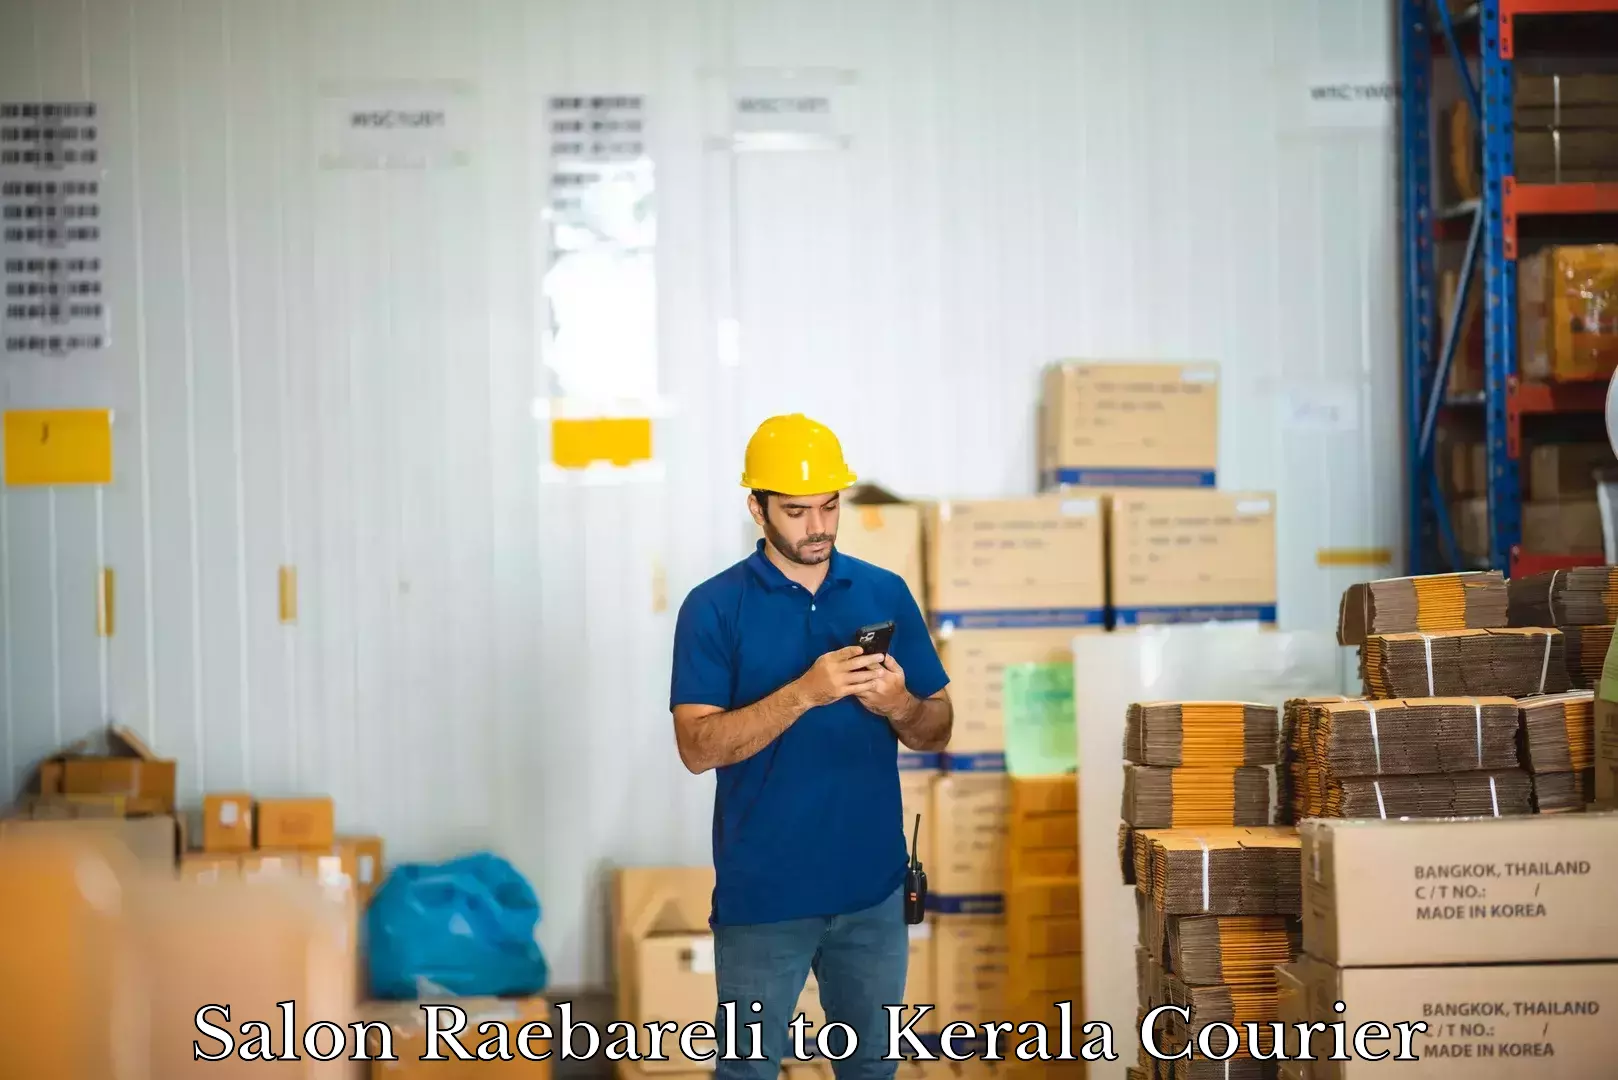 Expedited baggage courier Salon Raebareli to Cochin Port Kochi